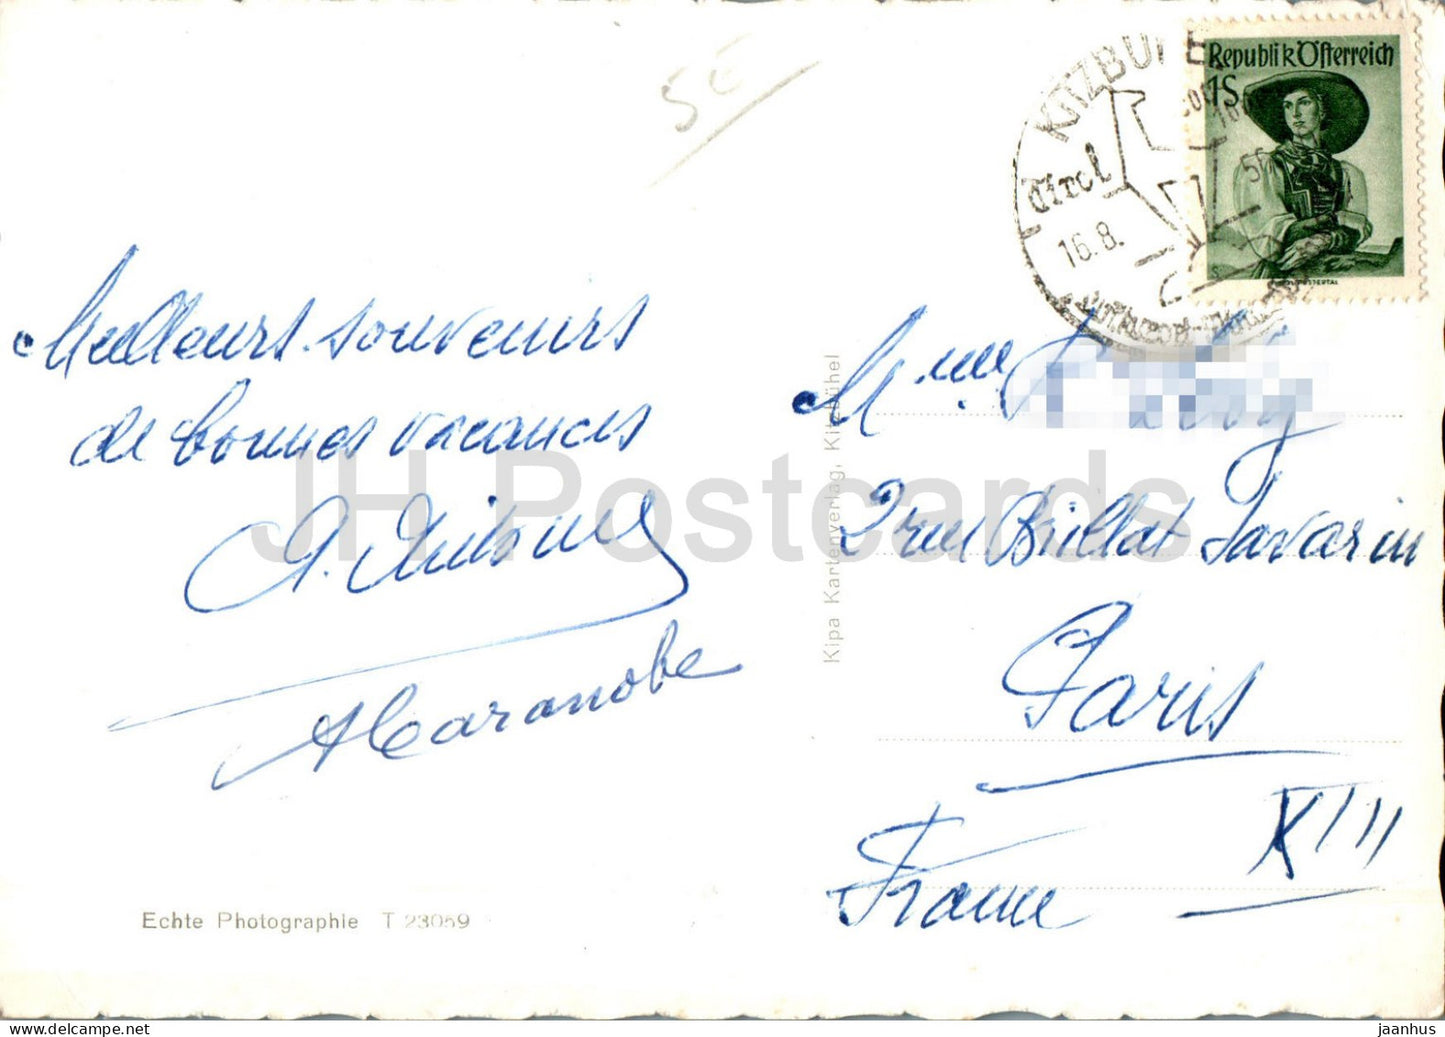 Kitzbühel gegen Suden - Tirol - Tiefenbrunner - 23059 - alte Postkarte - 1956 - Österreich - gebraucht 